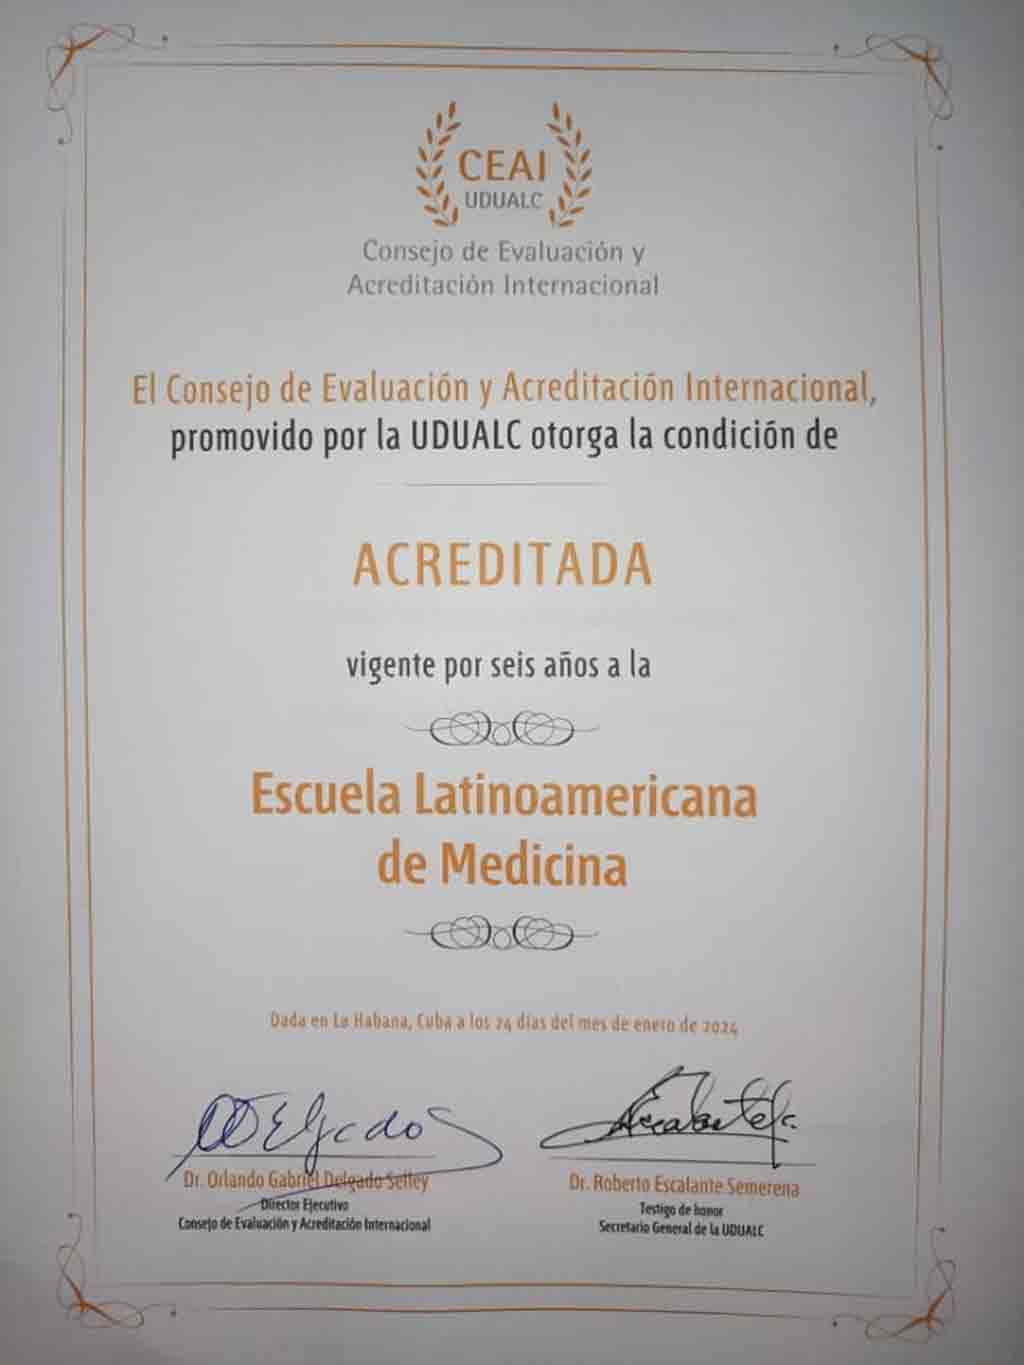  escuela-latinoamericana-de-medicina-logra-acreditacion-internacional